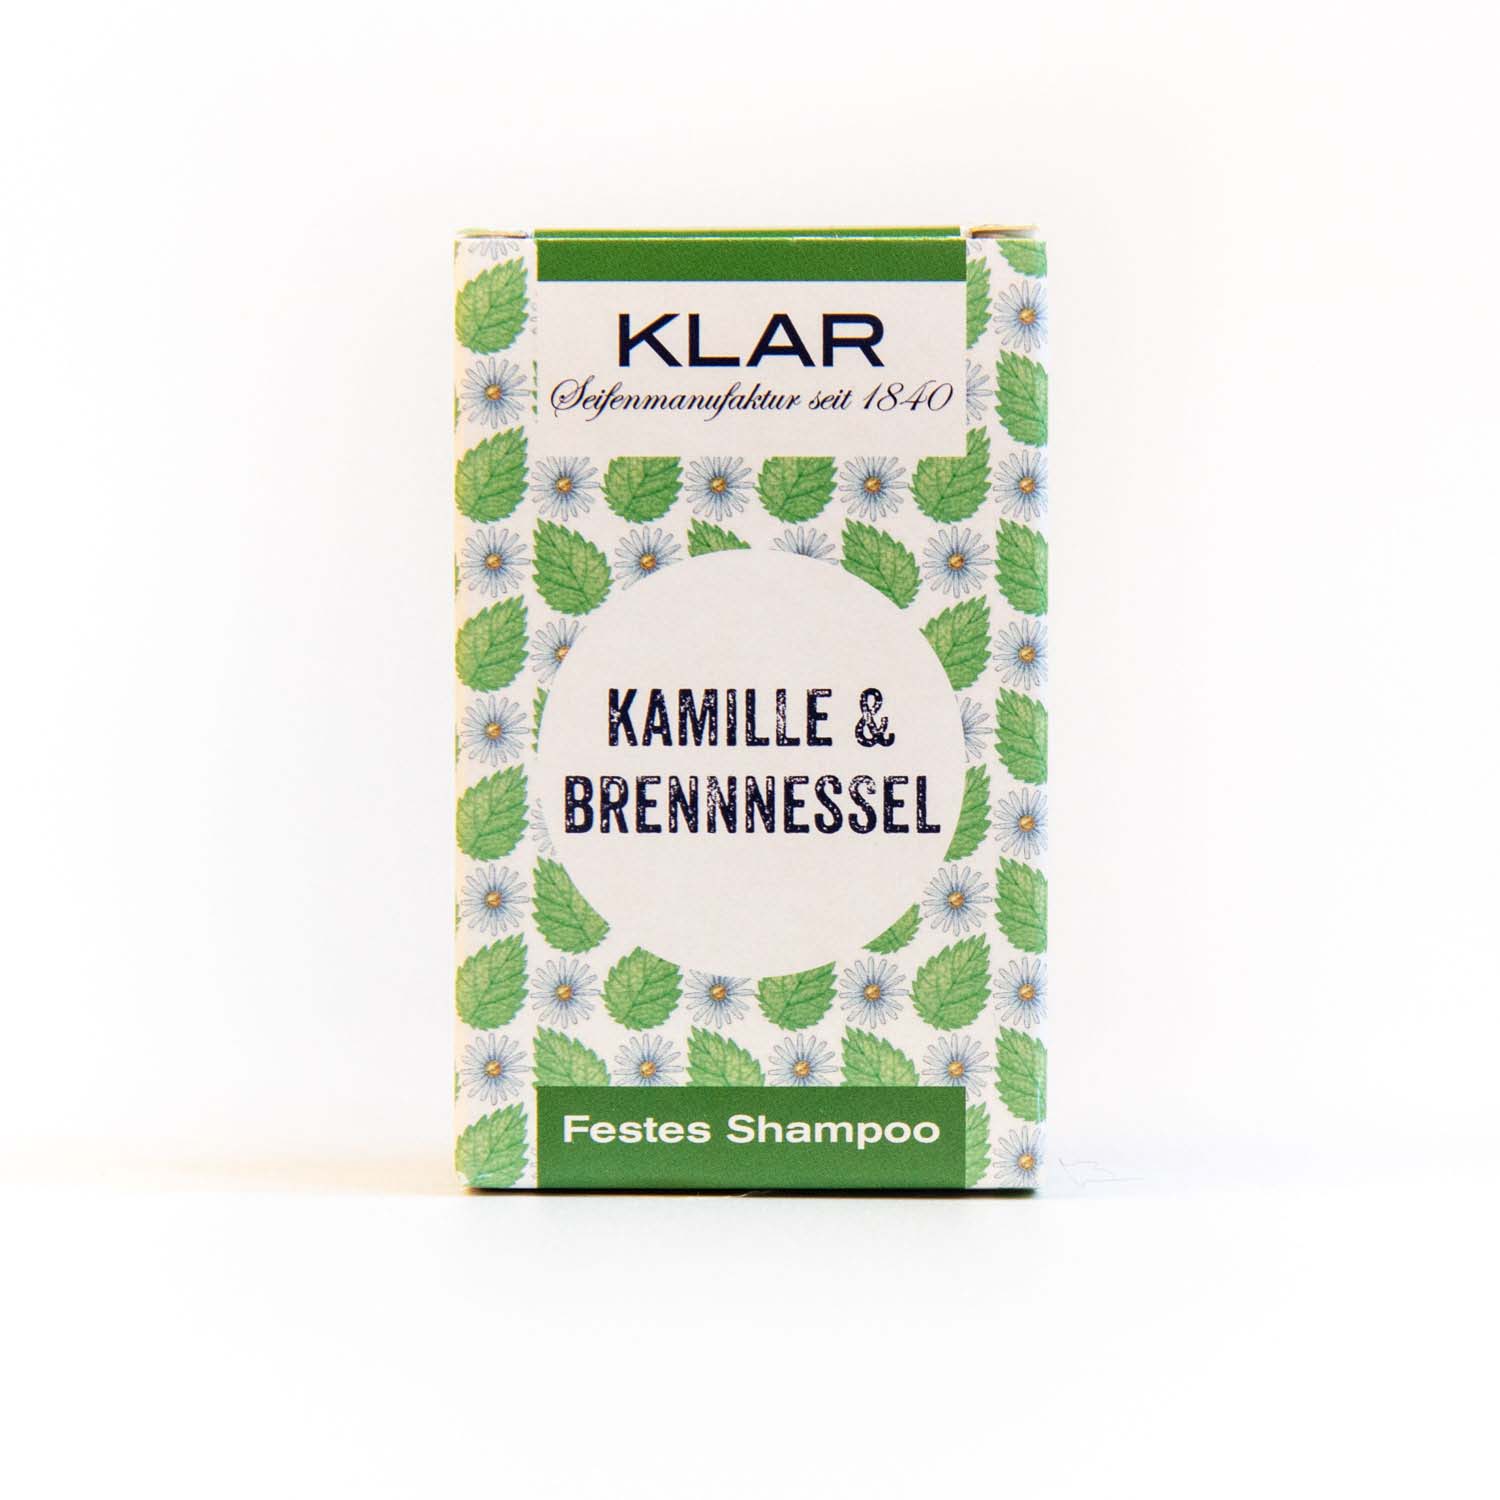 Klar's festes Shampoo Kamille & Brennnessel 100g